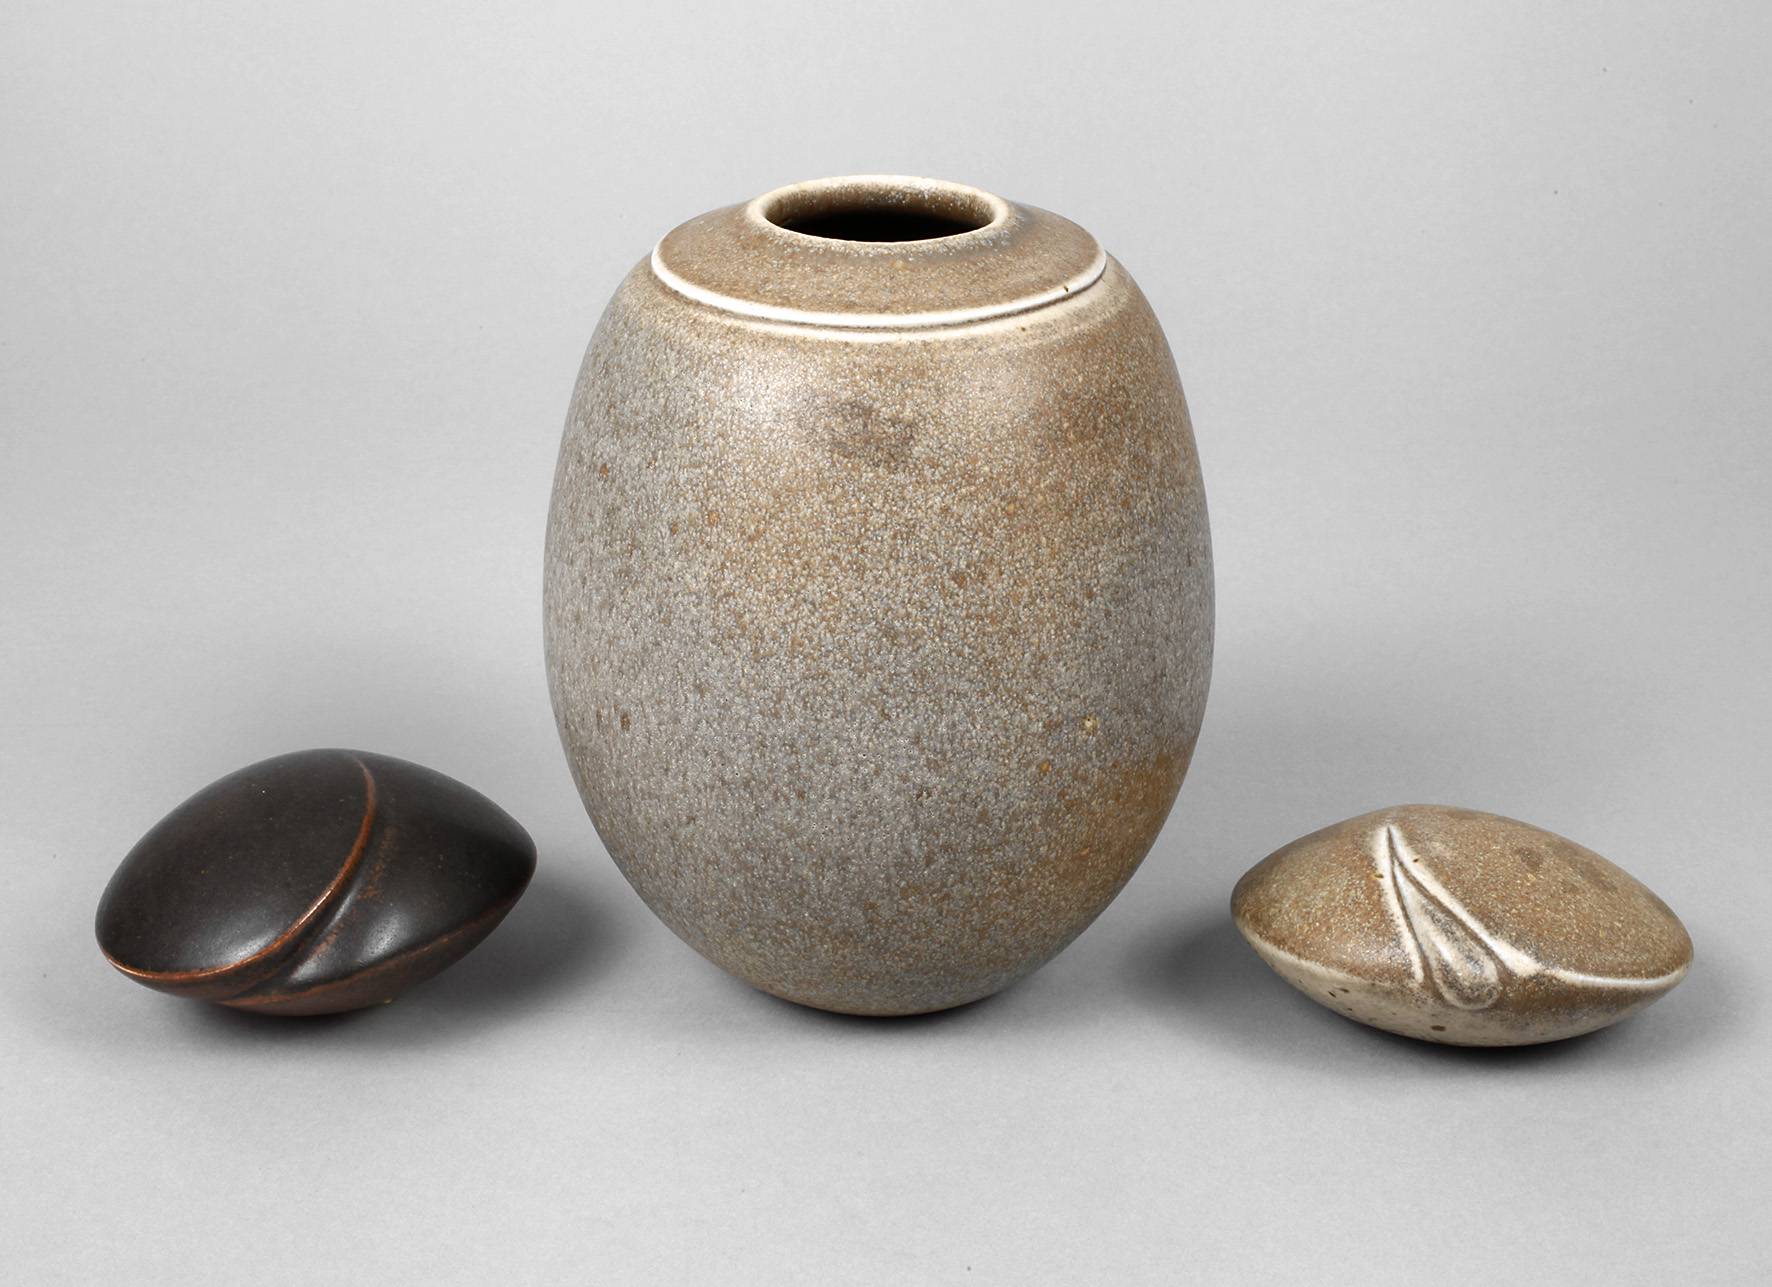 Antje Wiewinner Vase und zwei Keramikobjekte